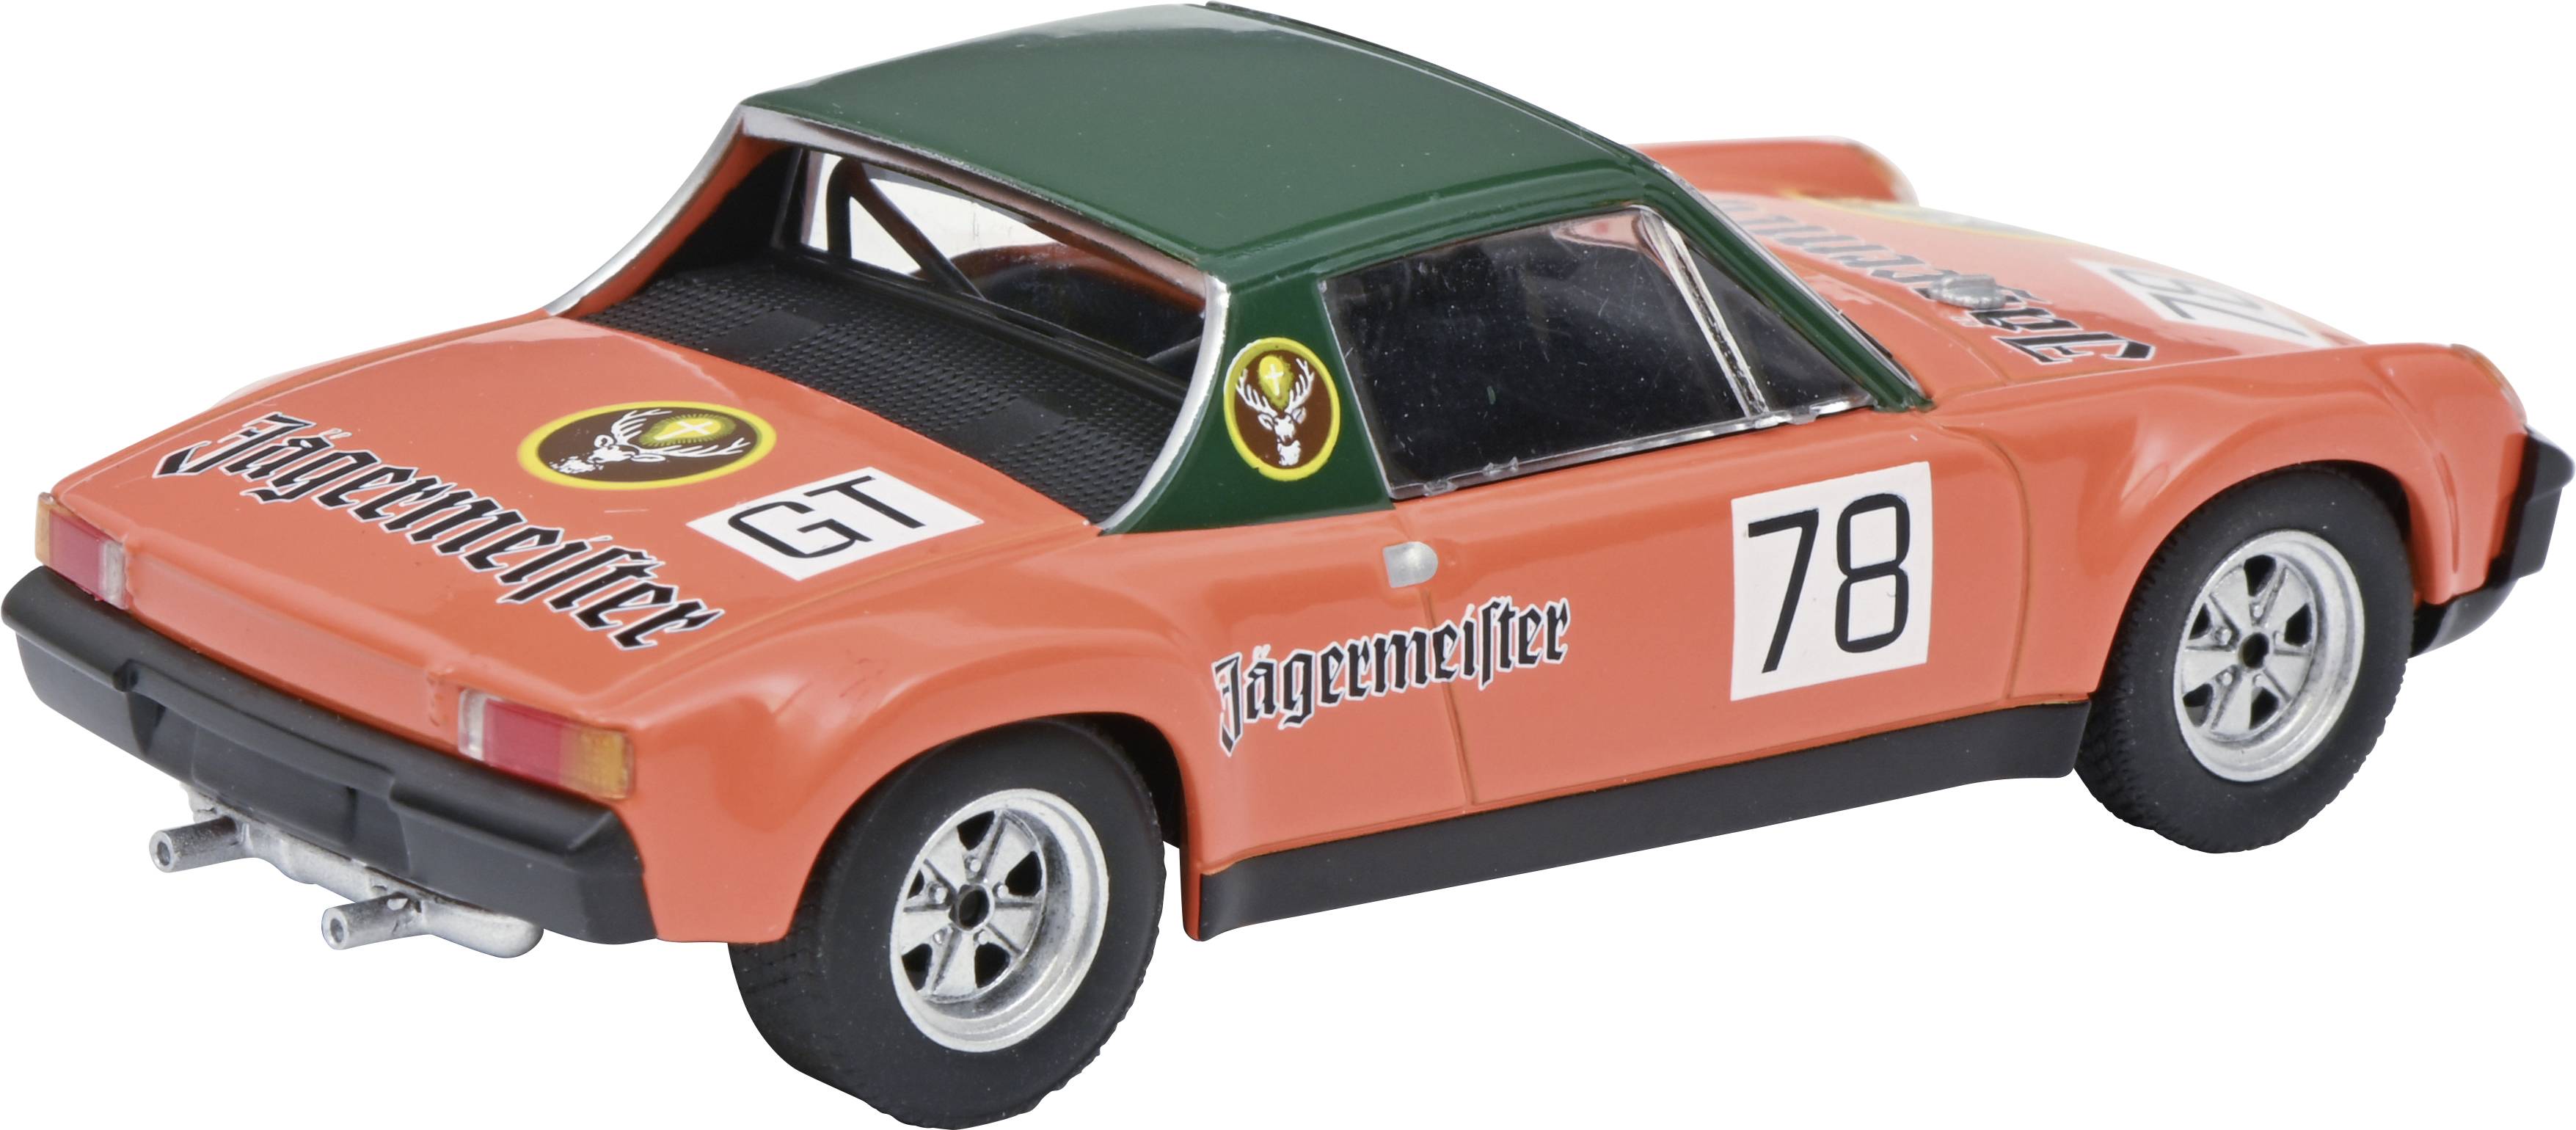 Detail Cars 1/43 Porsche 914-4 1969 Racing #78 ◇ Jagermesiter